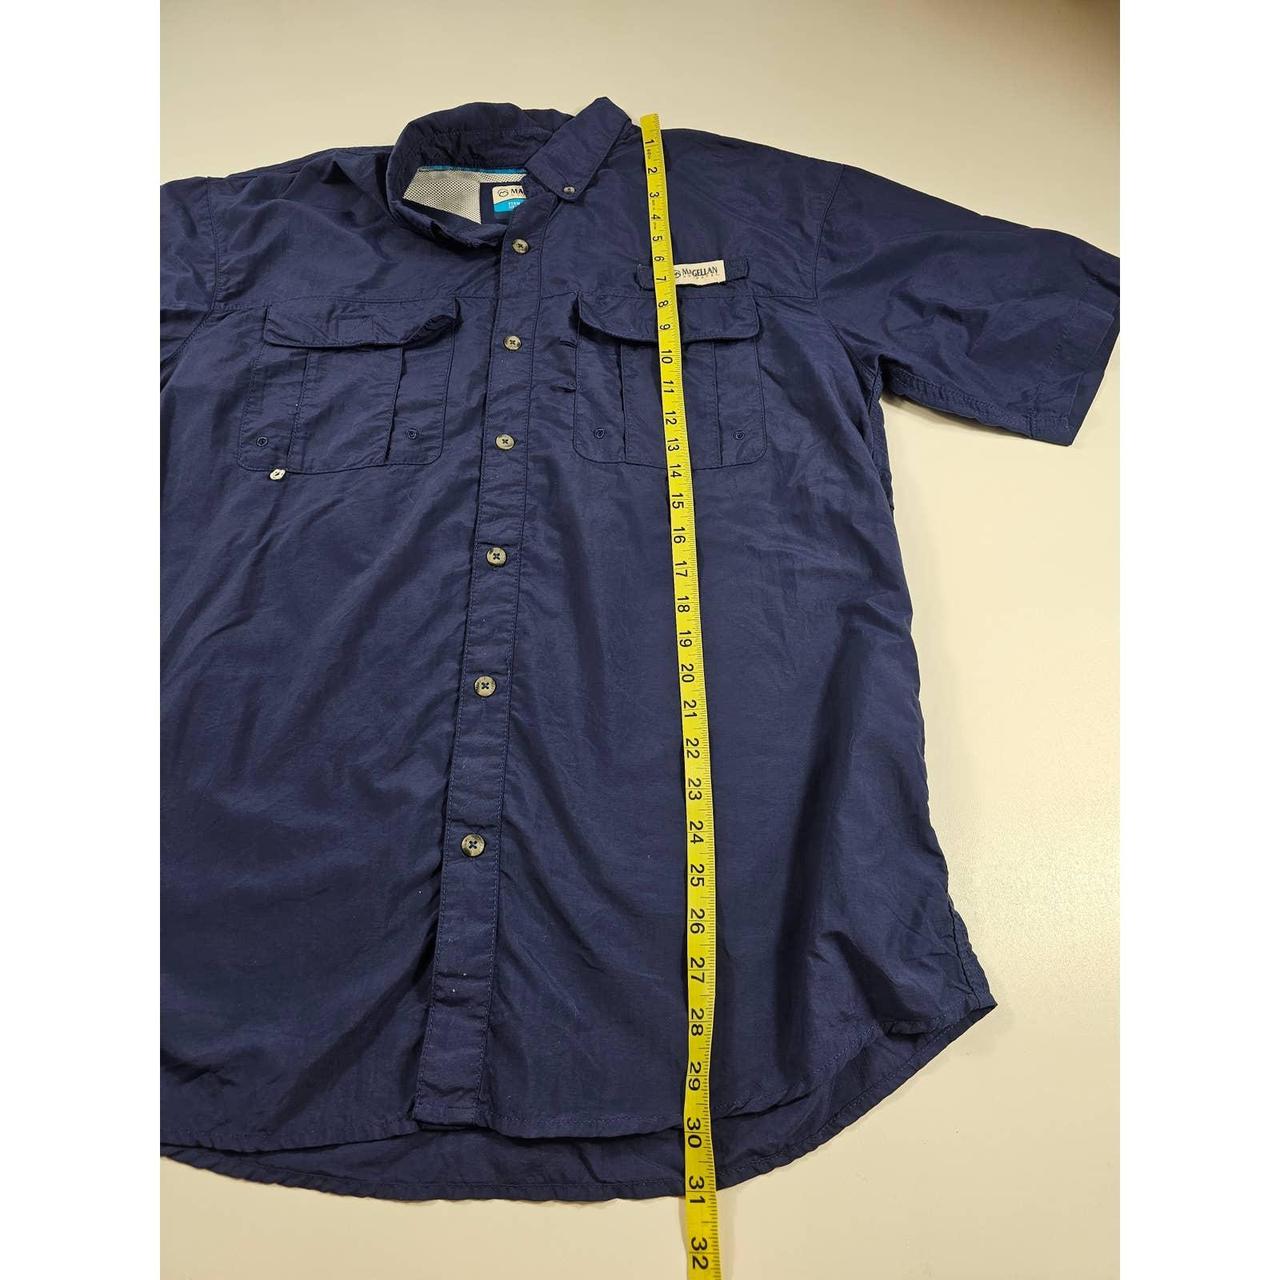 Navy blue magellan fishing shirt. Size medium, - Depop